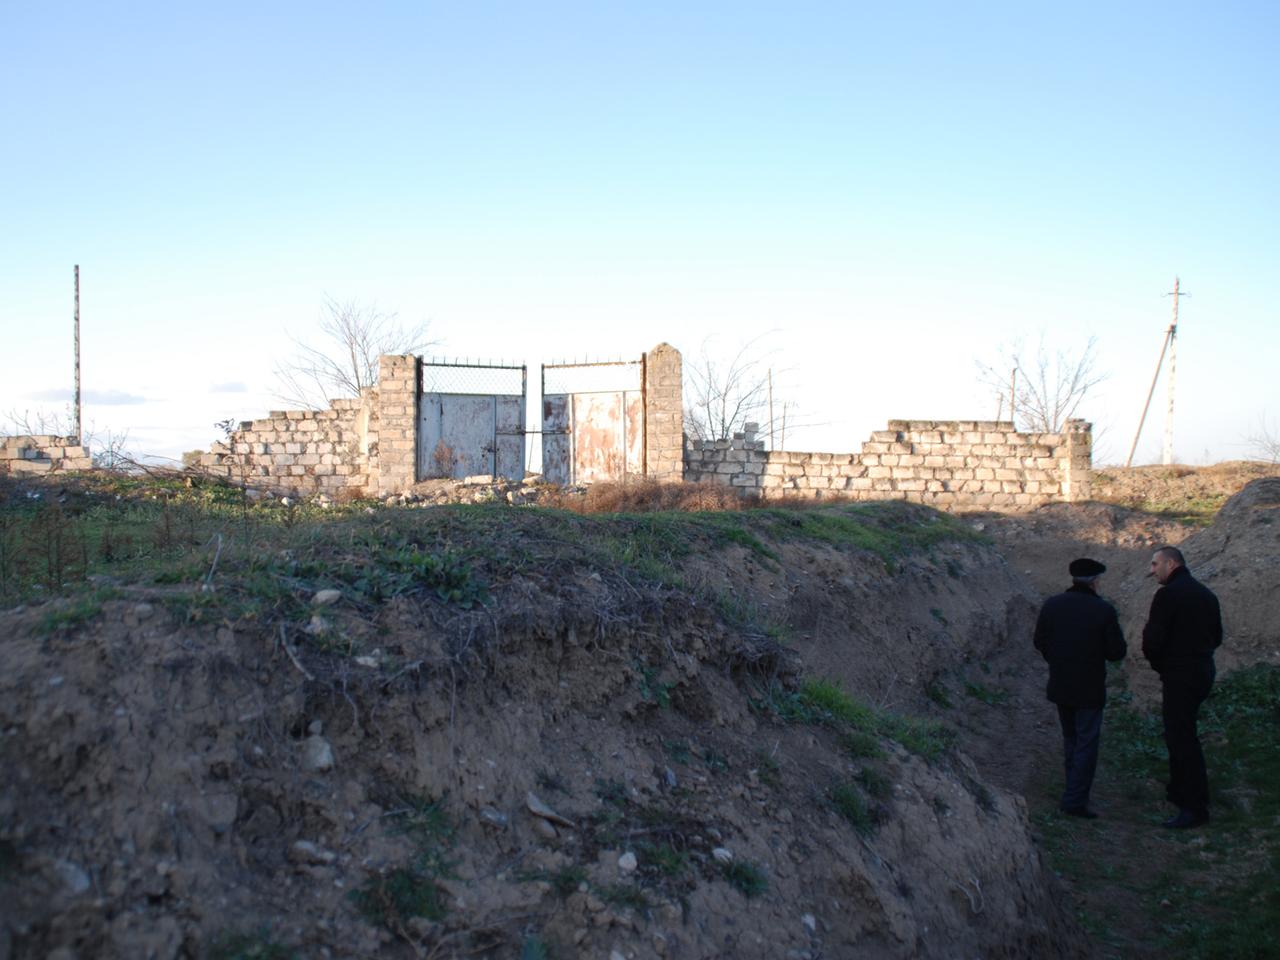 Bewohner des aserbaidschanischen Dorfs Chiragli bewegen sich am 4. Dezember 2013 zum Schutz vor armenischen Scharfschützen in Gräben. Hinter dem von Schüssen durchsiebten Tor liegen die armenischen Stellungen.